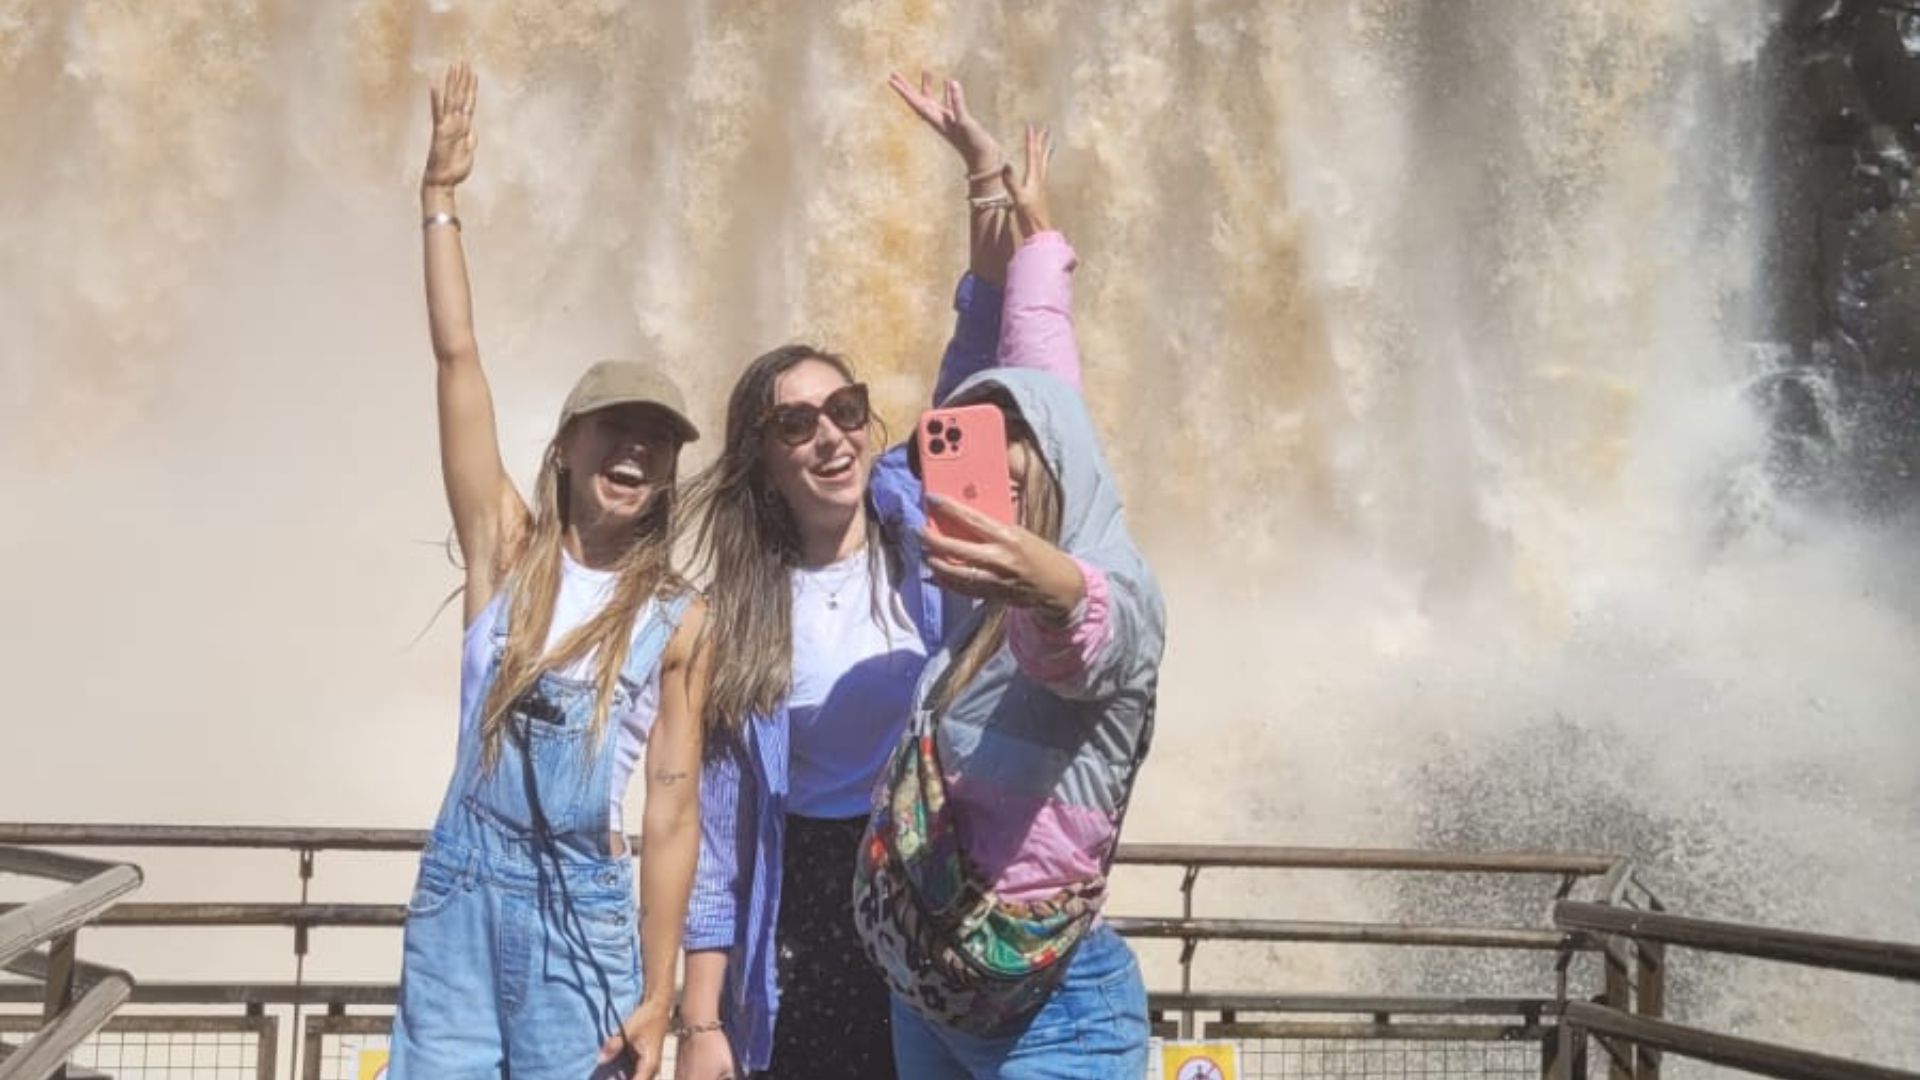 La chilena Maura Rivera, bailarina y creadora de contenido con más de 1,5 millones de seguidores en Instagram, visitó las Cataratas del Iguazú, en Misiones (Visit Argentina)